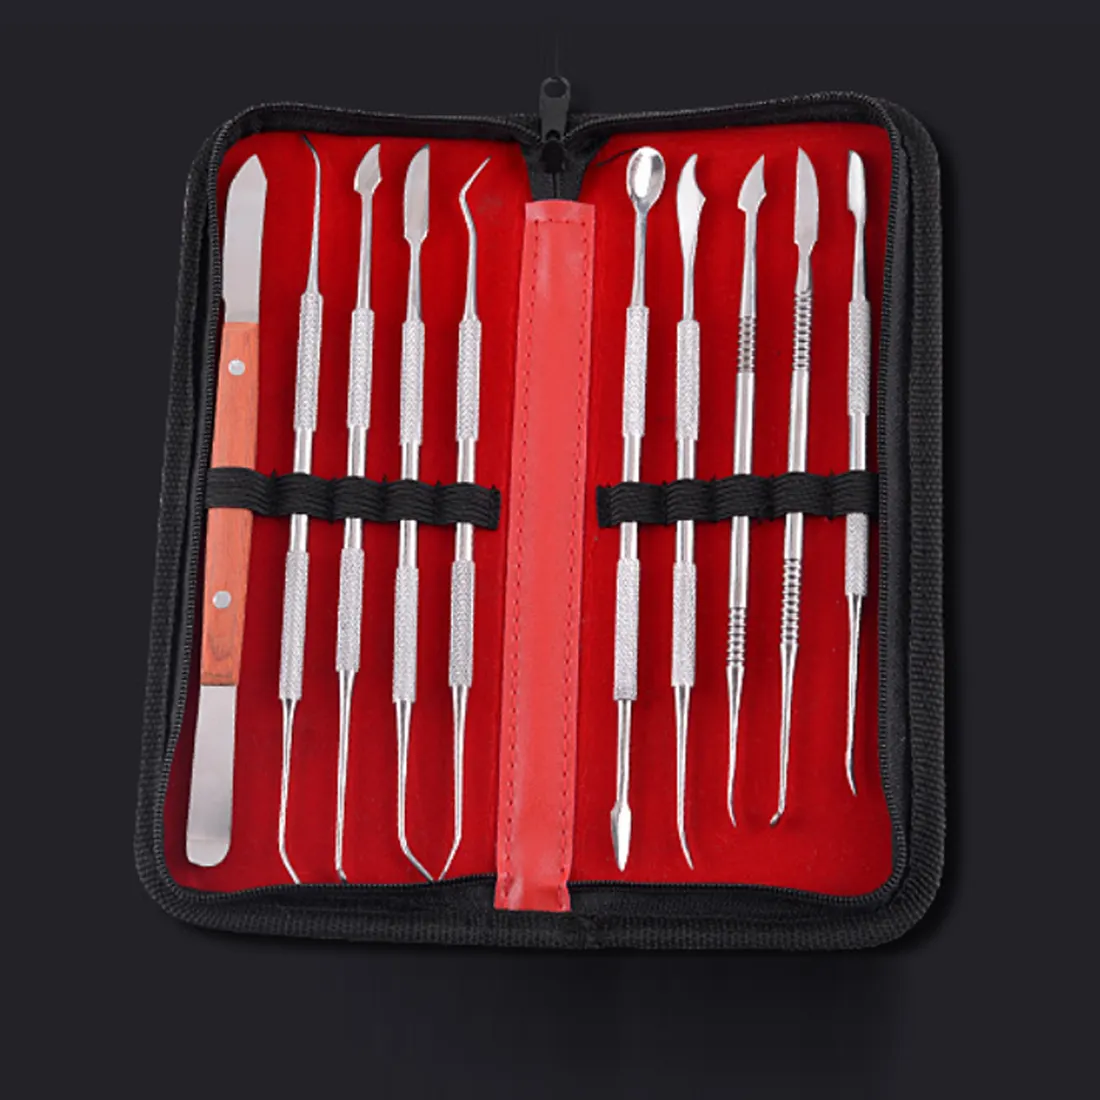 Kit de ferramentas para dentes, instrumento dentário de aço inoxidável versátil, ferramenta prática com suporte de pu, com 10 peças